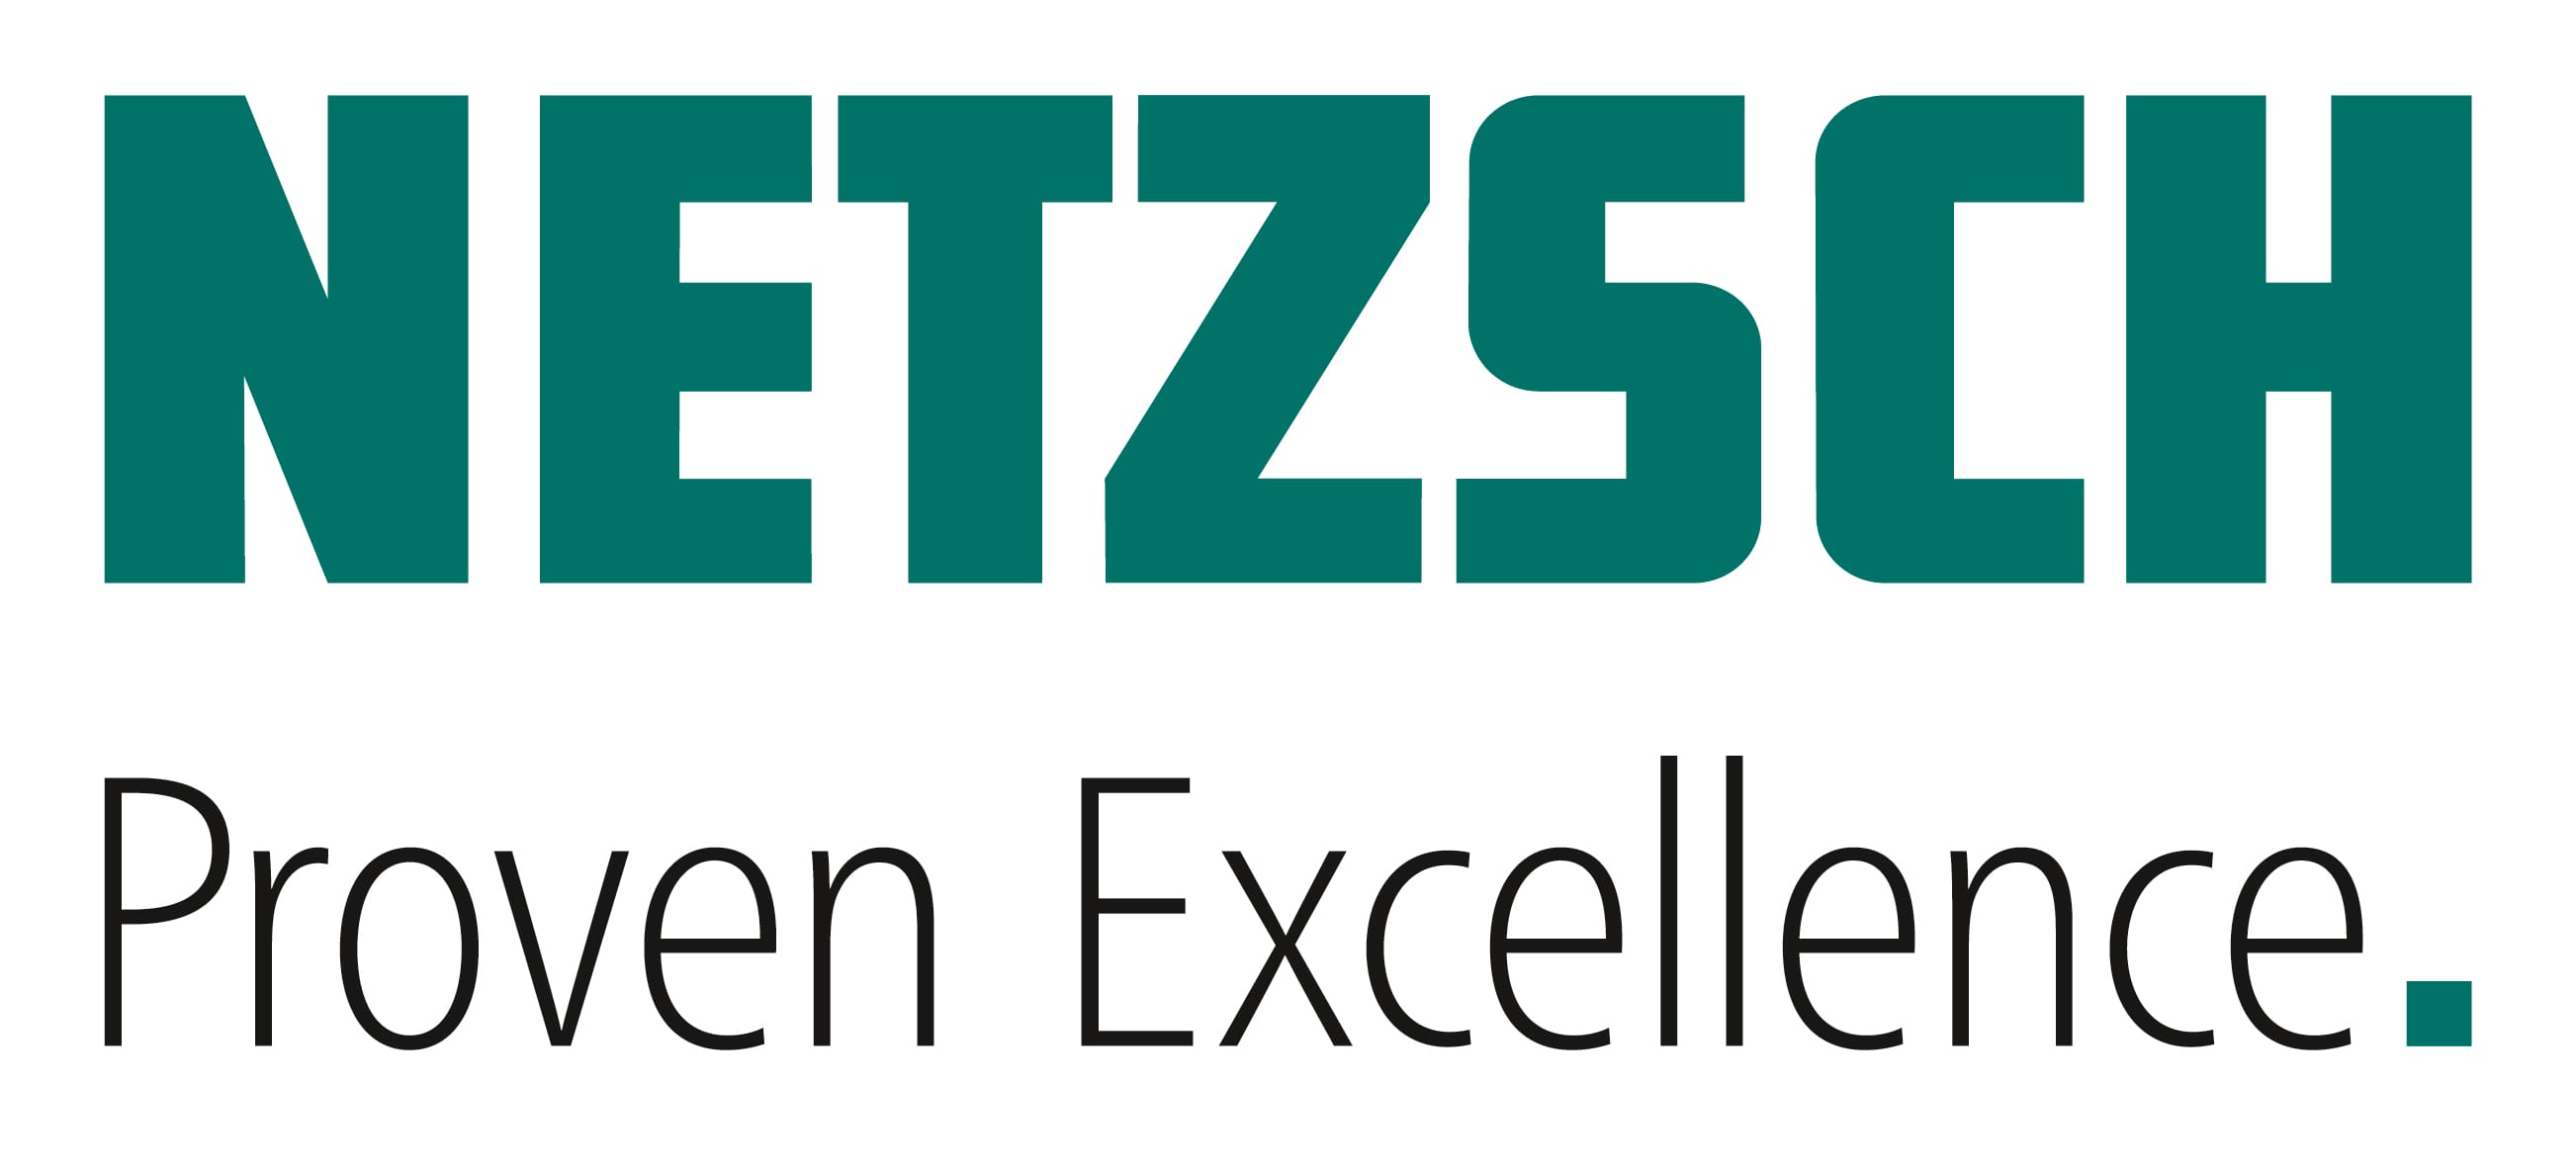 NETZSCH_Logo